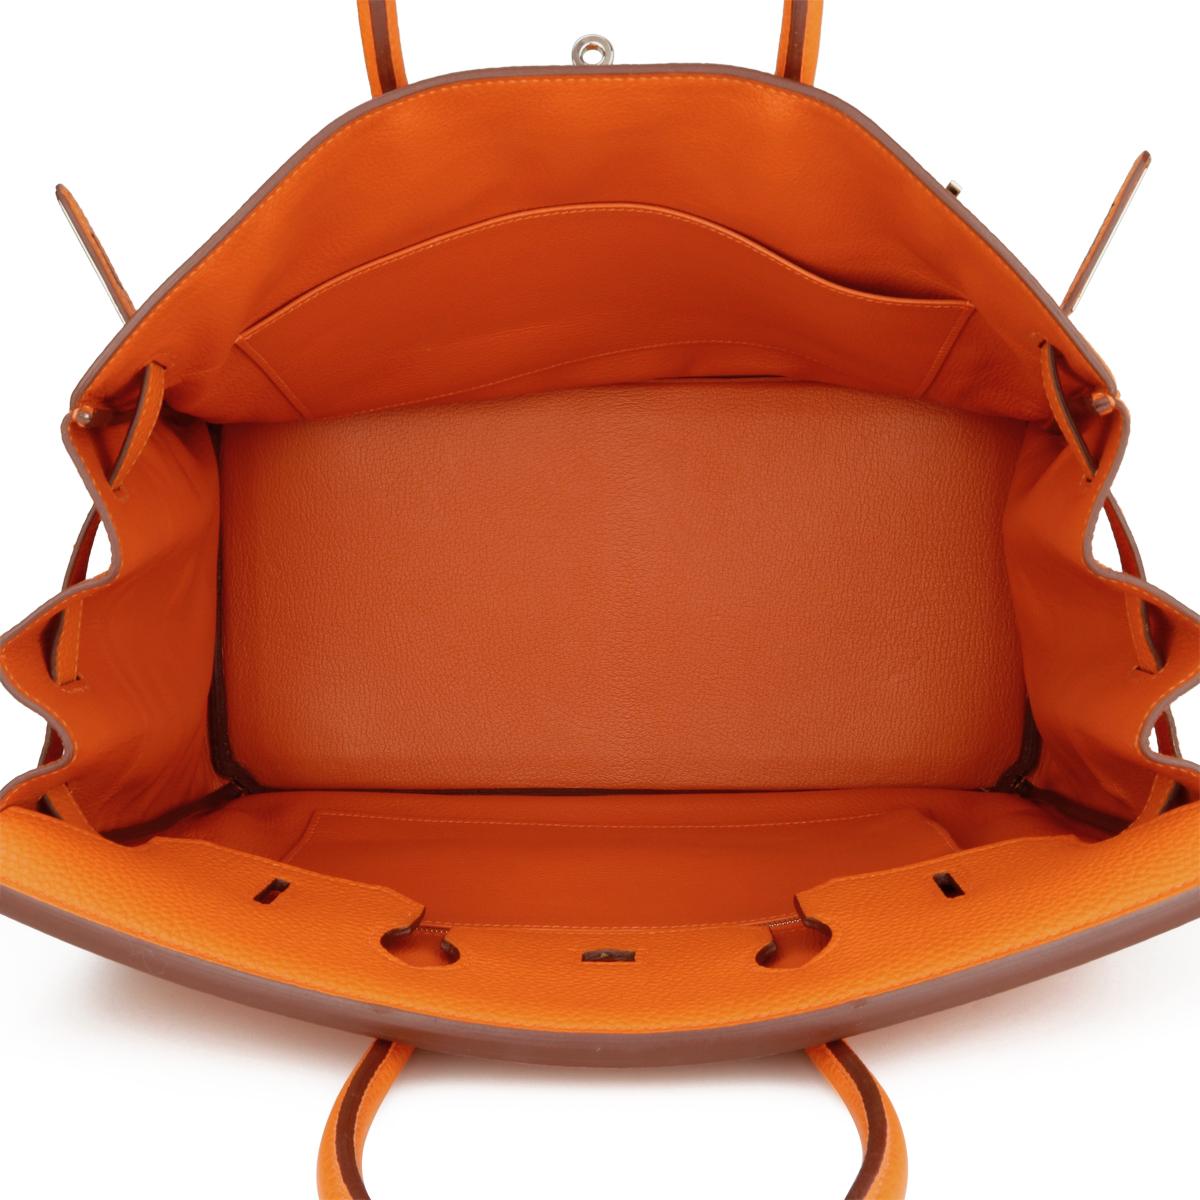 Hermès Birkin Bag 35cm Orange Togo Leather with Palladium Hardware Stamp N 2010 8